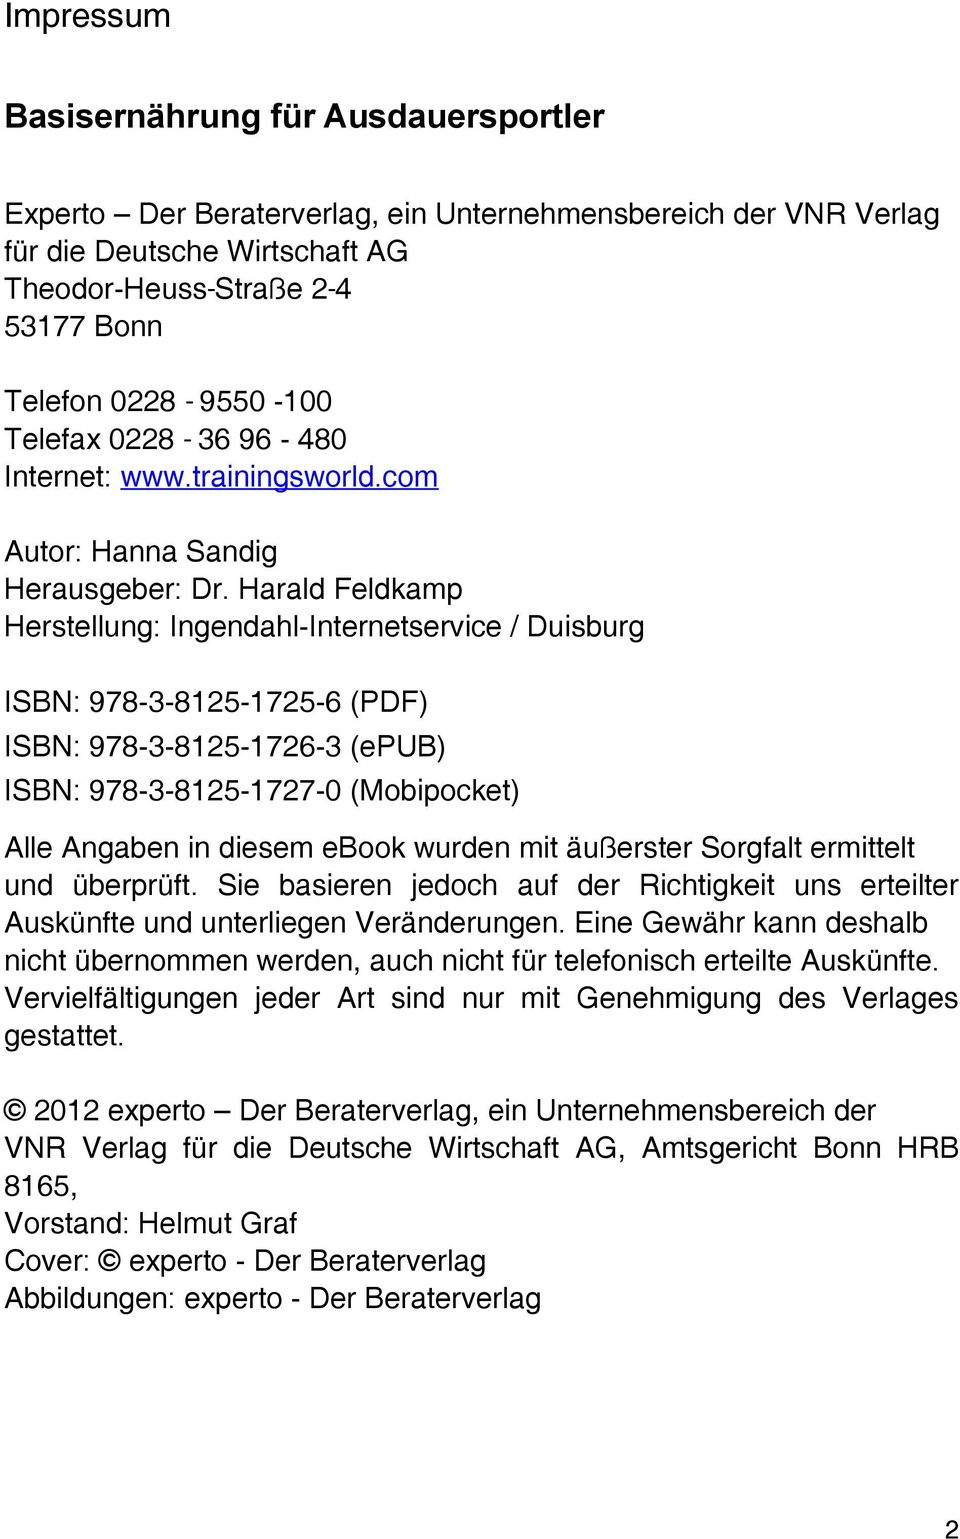 Harald Feldkamp Herstellung: Ingendahl-Internetservice / Duisburg ISBN: 978-3-8125-1725-6 (PDF) ISBN: 978-3-8125-1726-3 (epub) ISBN: 978-3-8125-1727-0 (Mobipocket) Alle Angaben in diesem ebook wurden